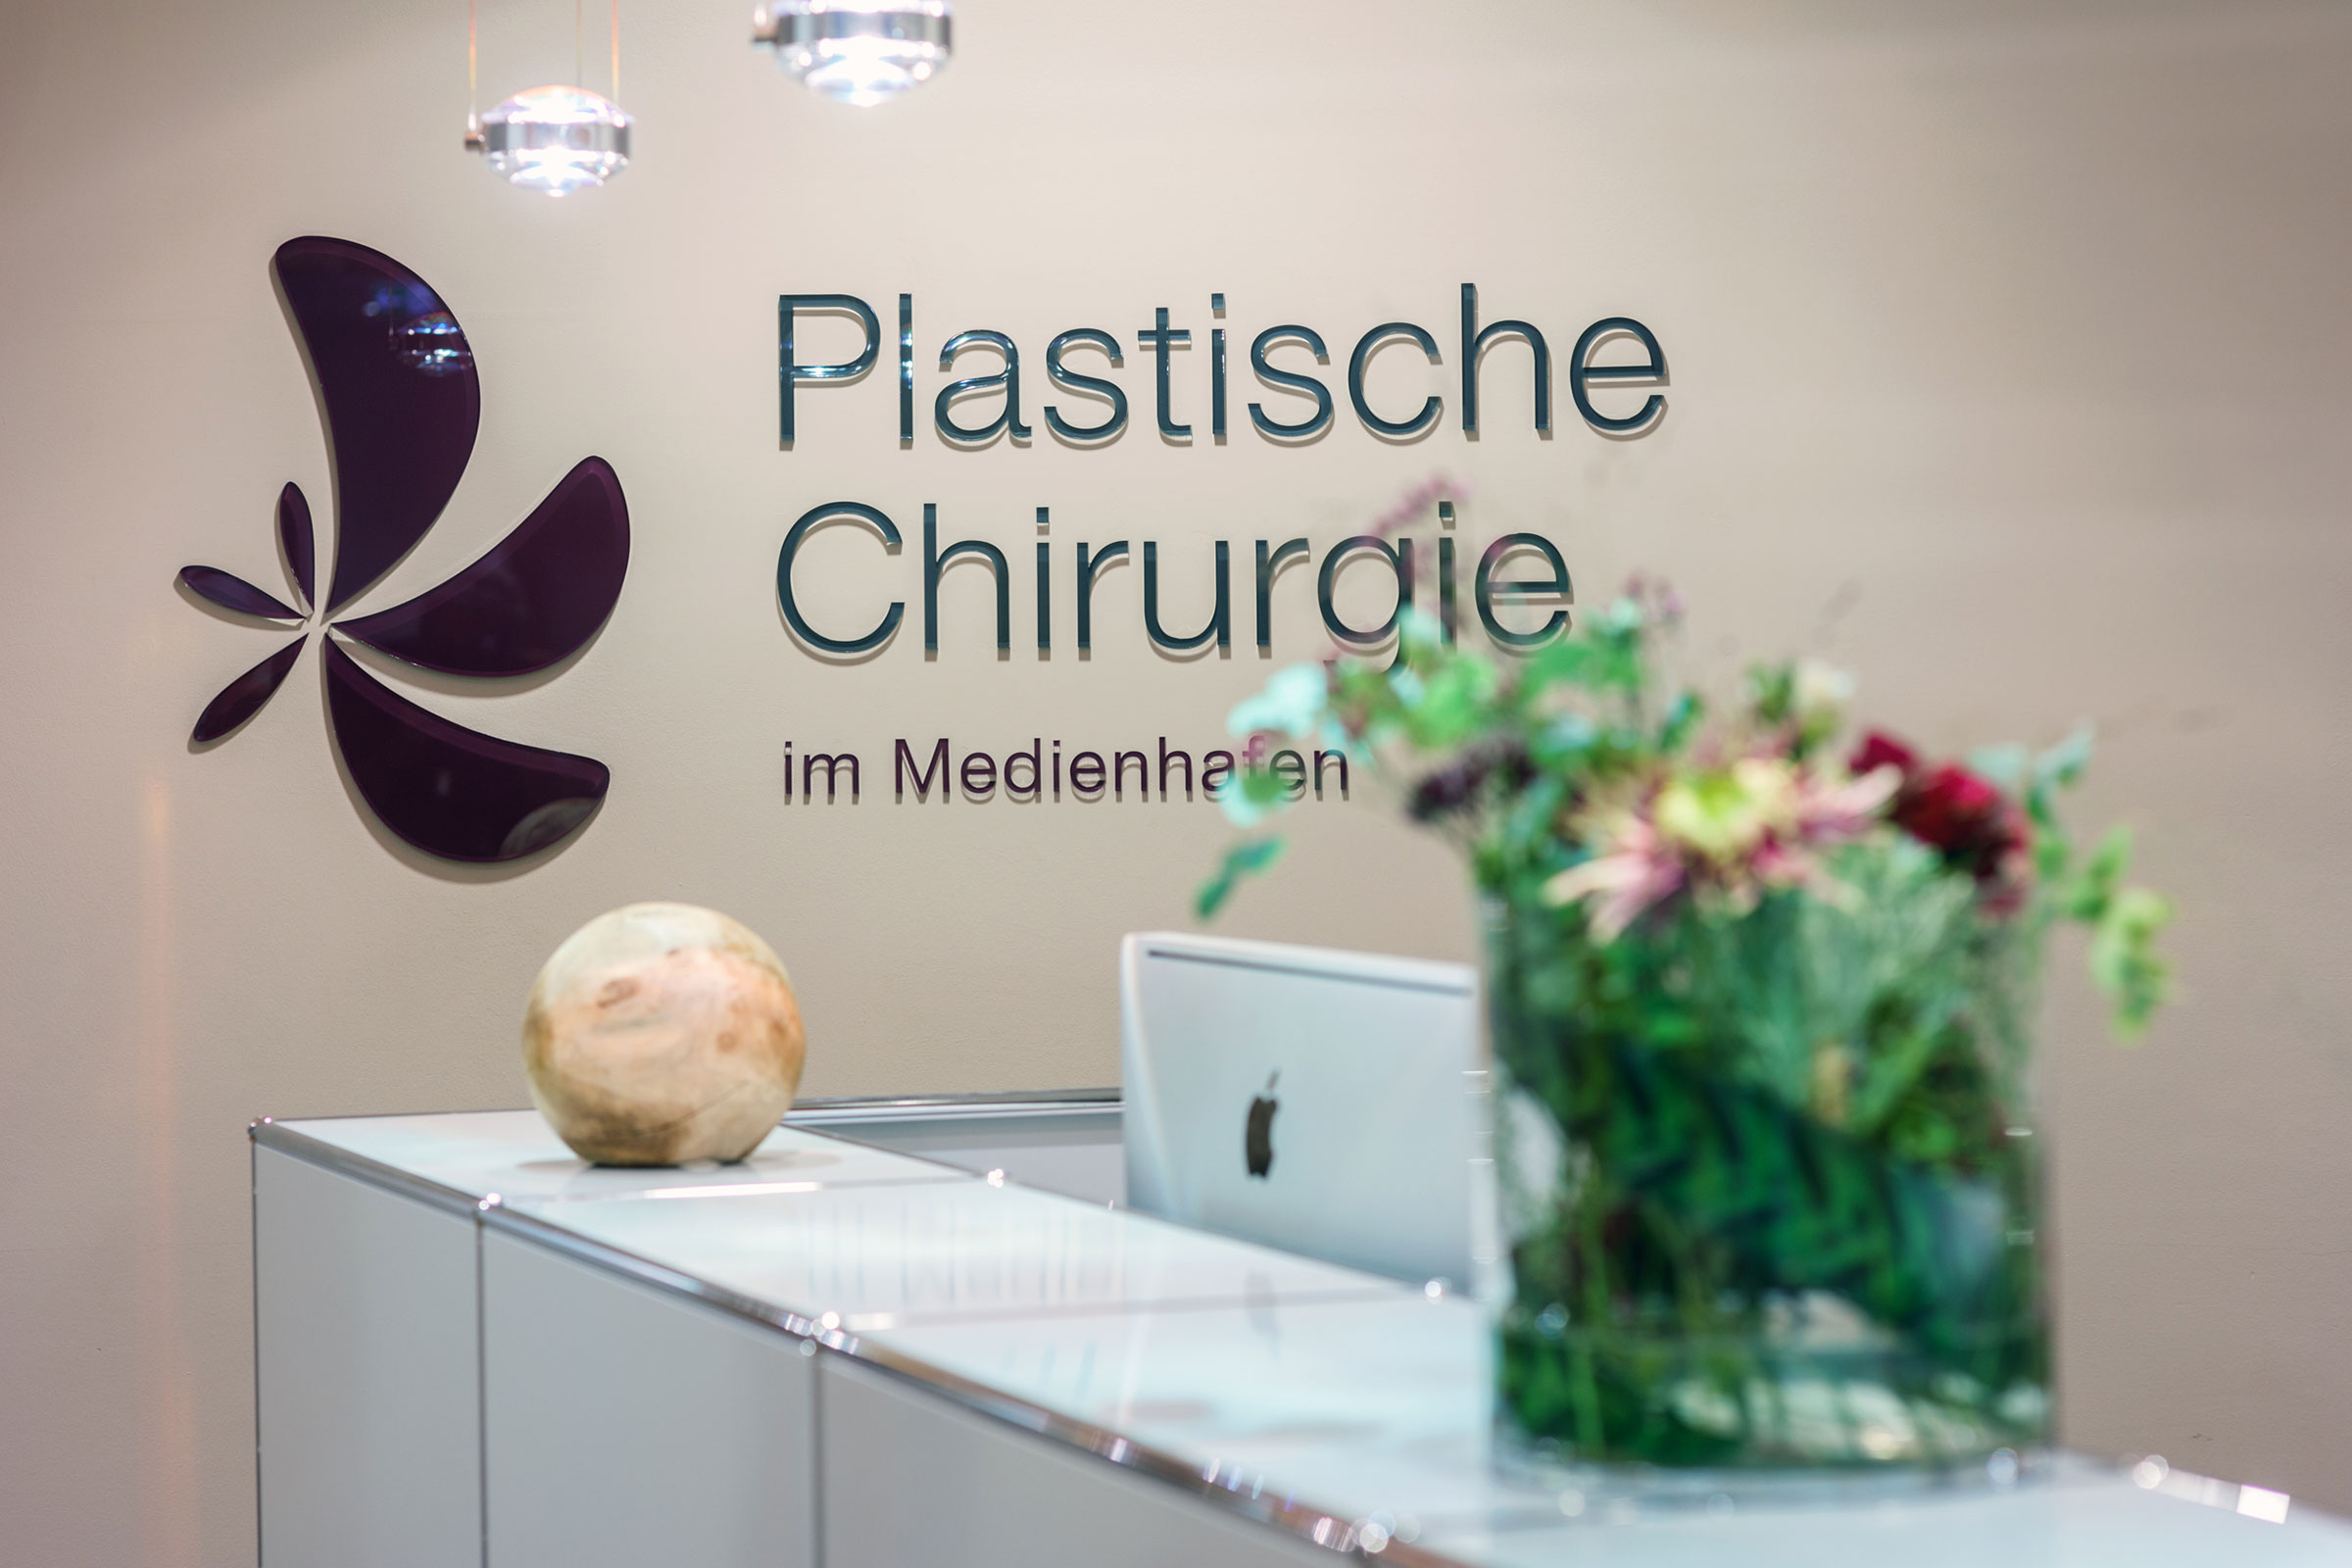 Schönheitsoperation bei der Plastischen Chirurgie Medienhafen in Düsseldorf finanzieren lassen